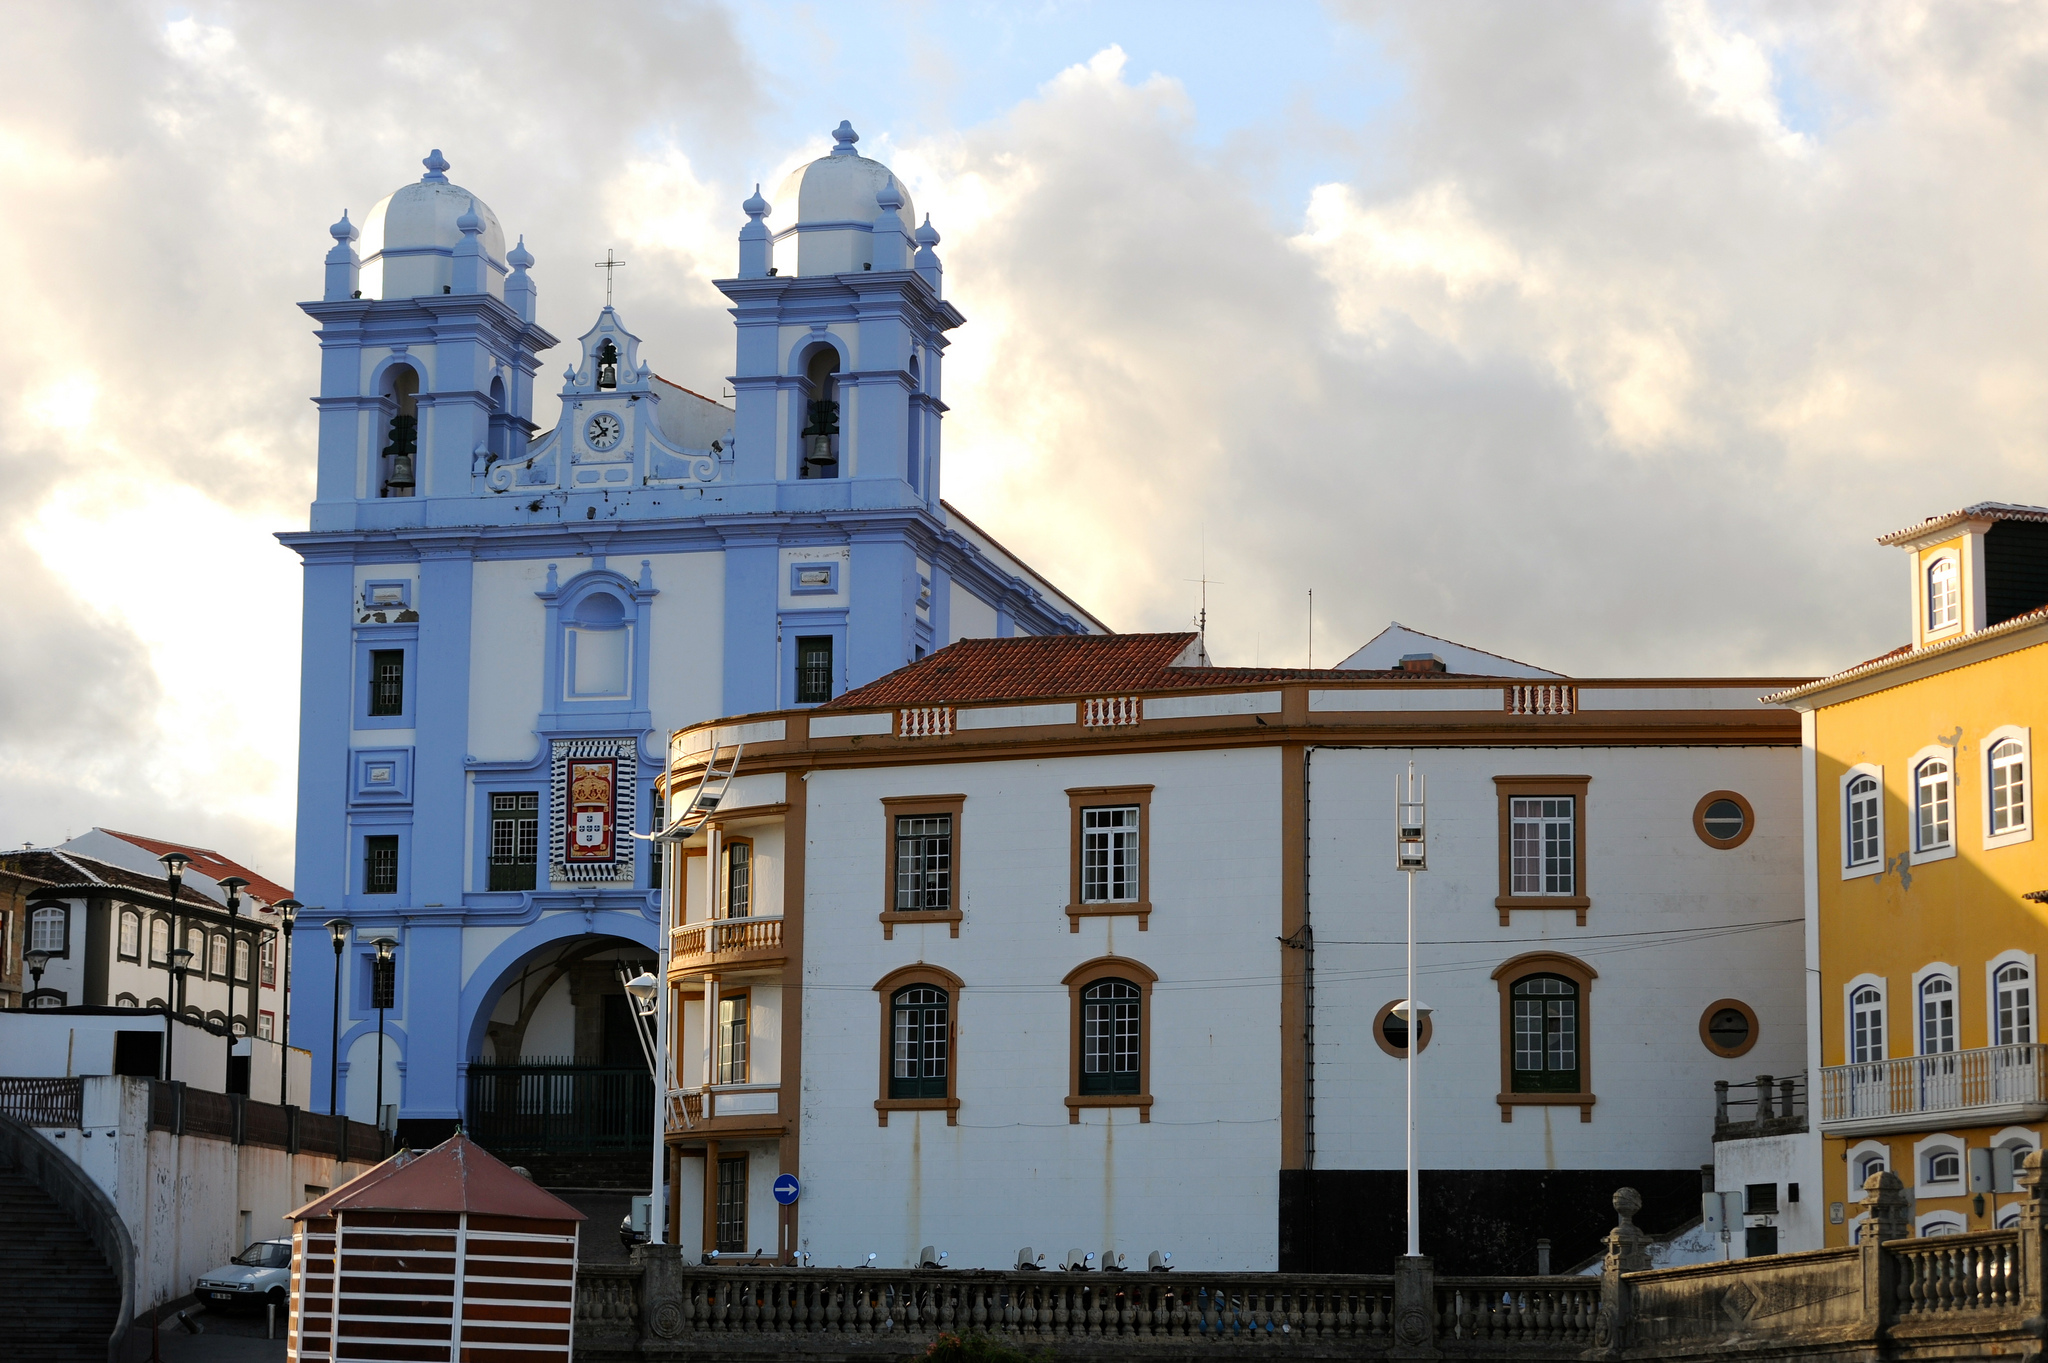 Igreja da Misericórdia - Angra do Heroísmo - Terceira, Açores